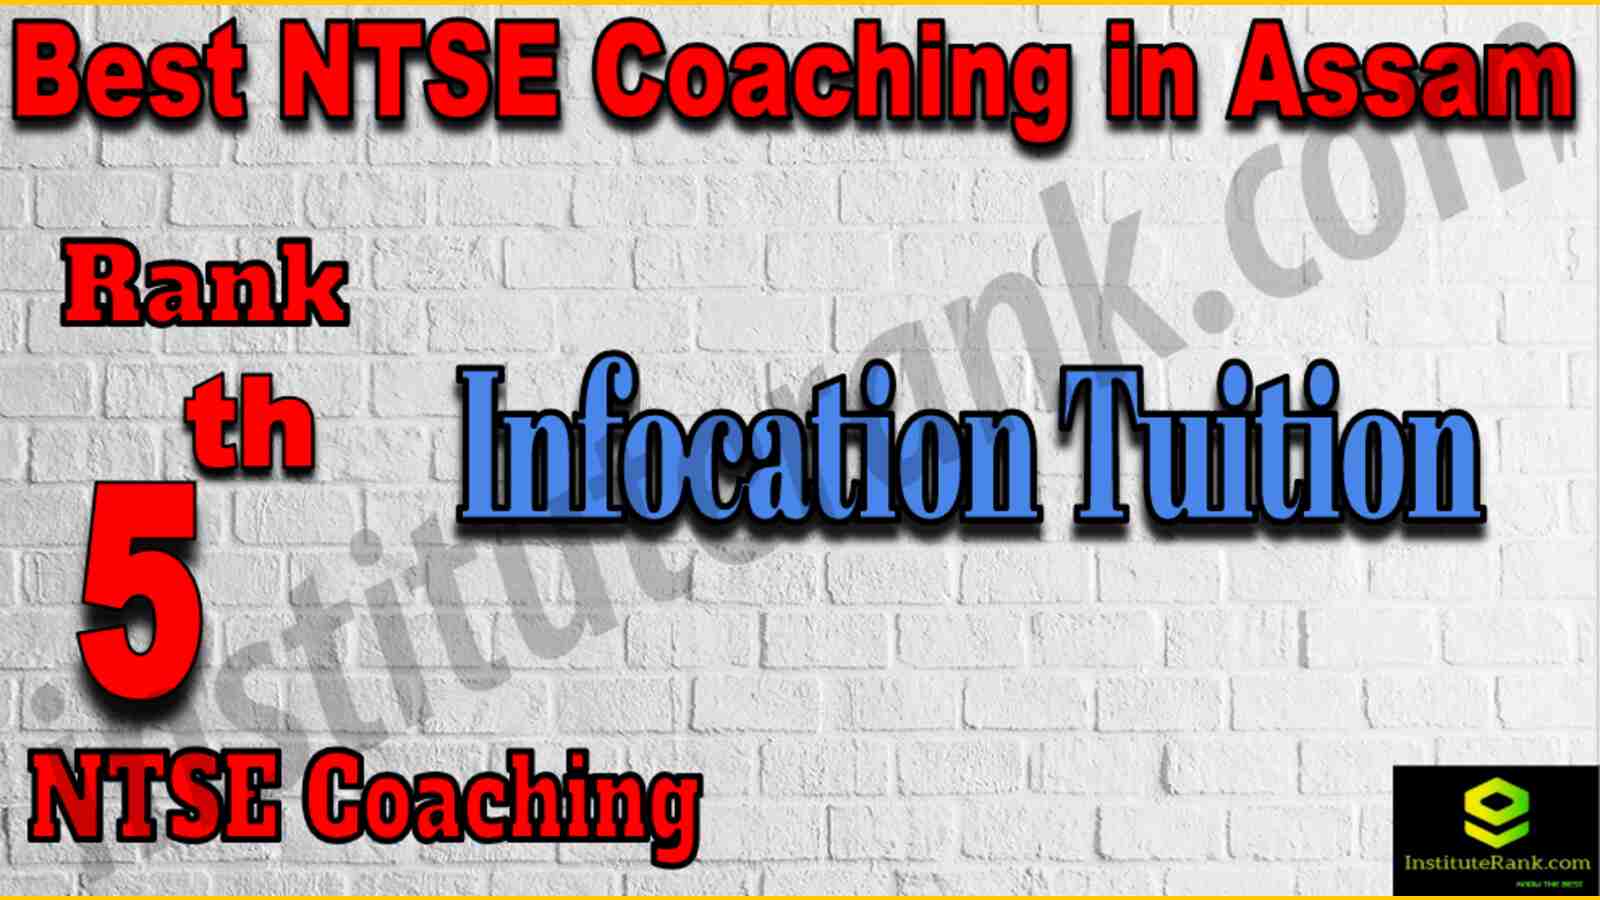 5th Best NTSE Coaching in Assam